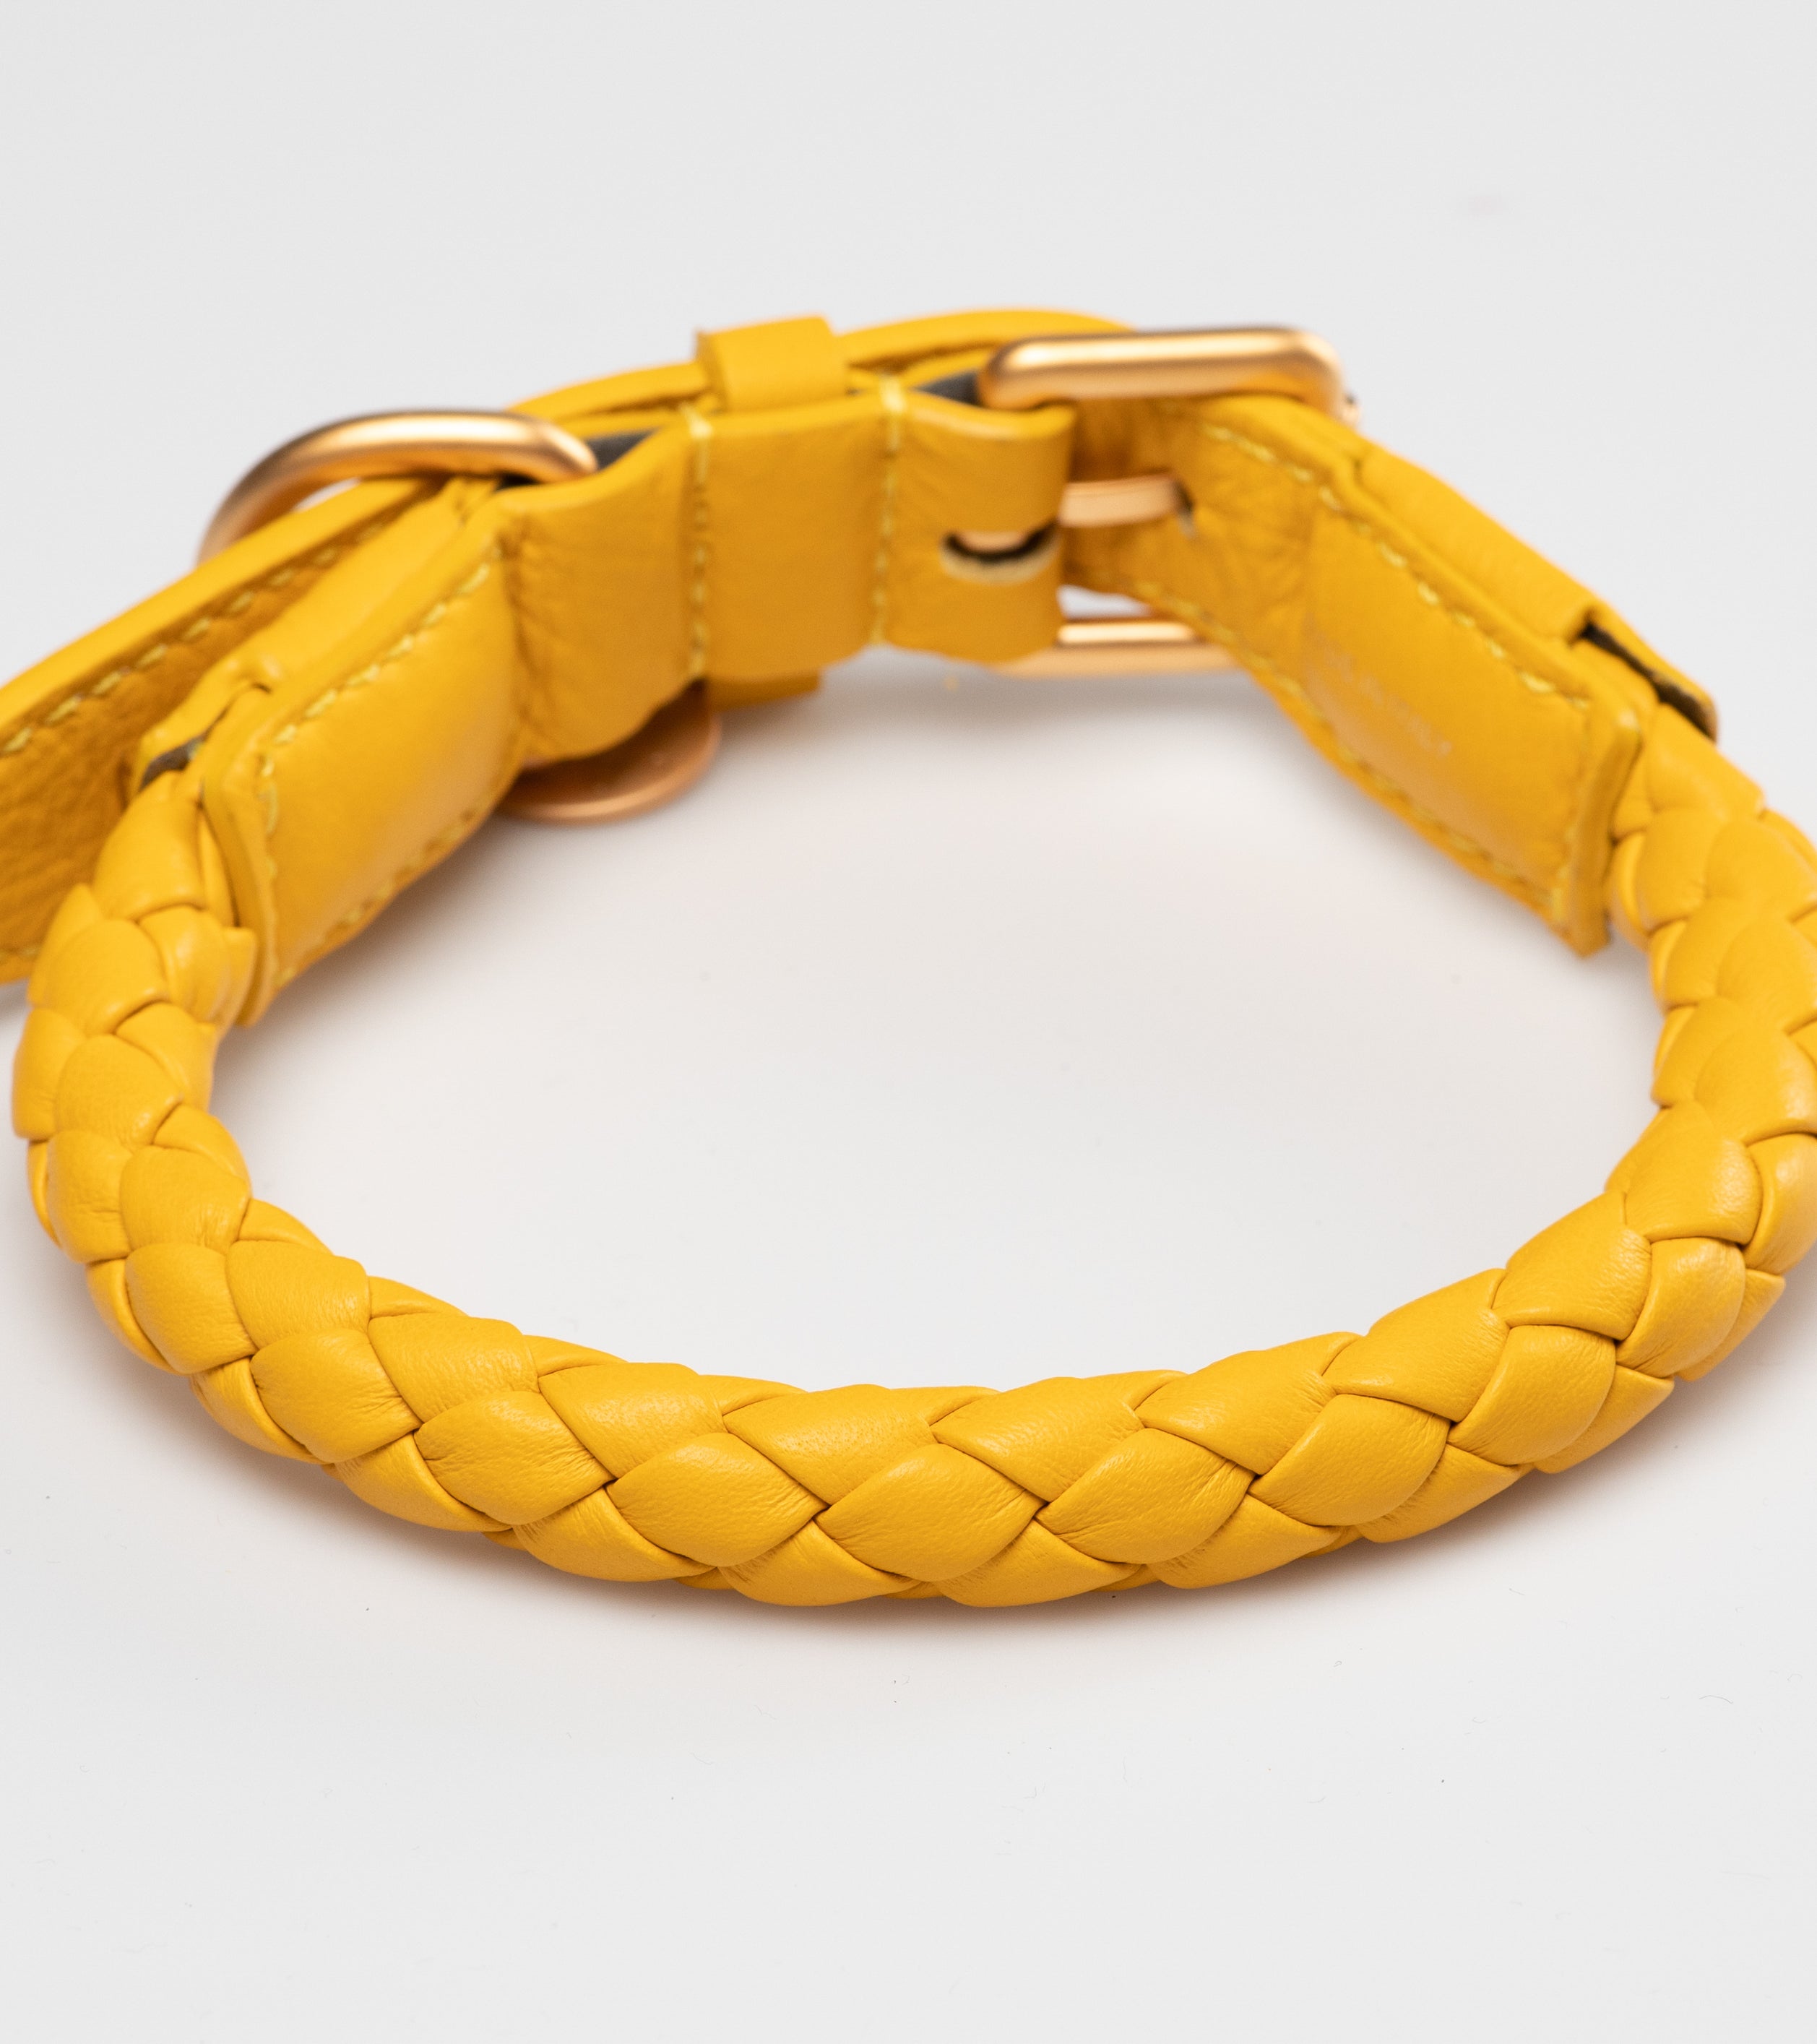 yellow-dog-collar-detail_517b0092-a021-43a2-a0a0-b882c4a8e9d7.jpg